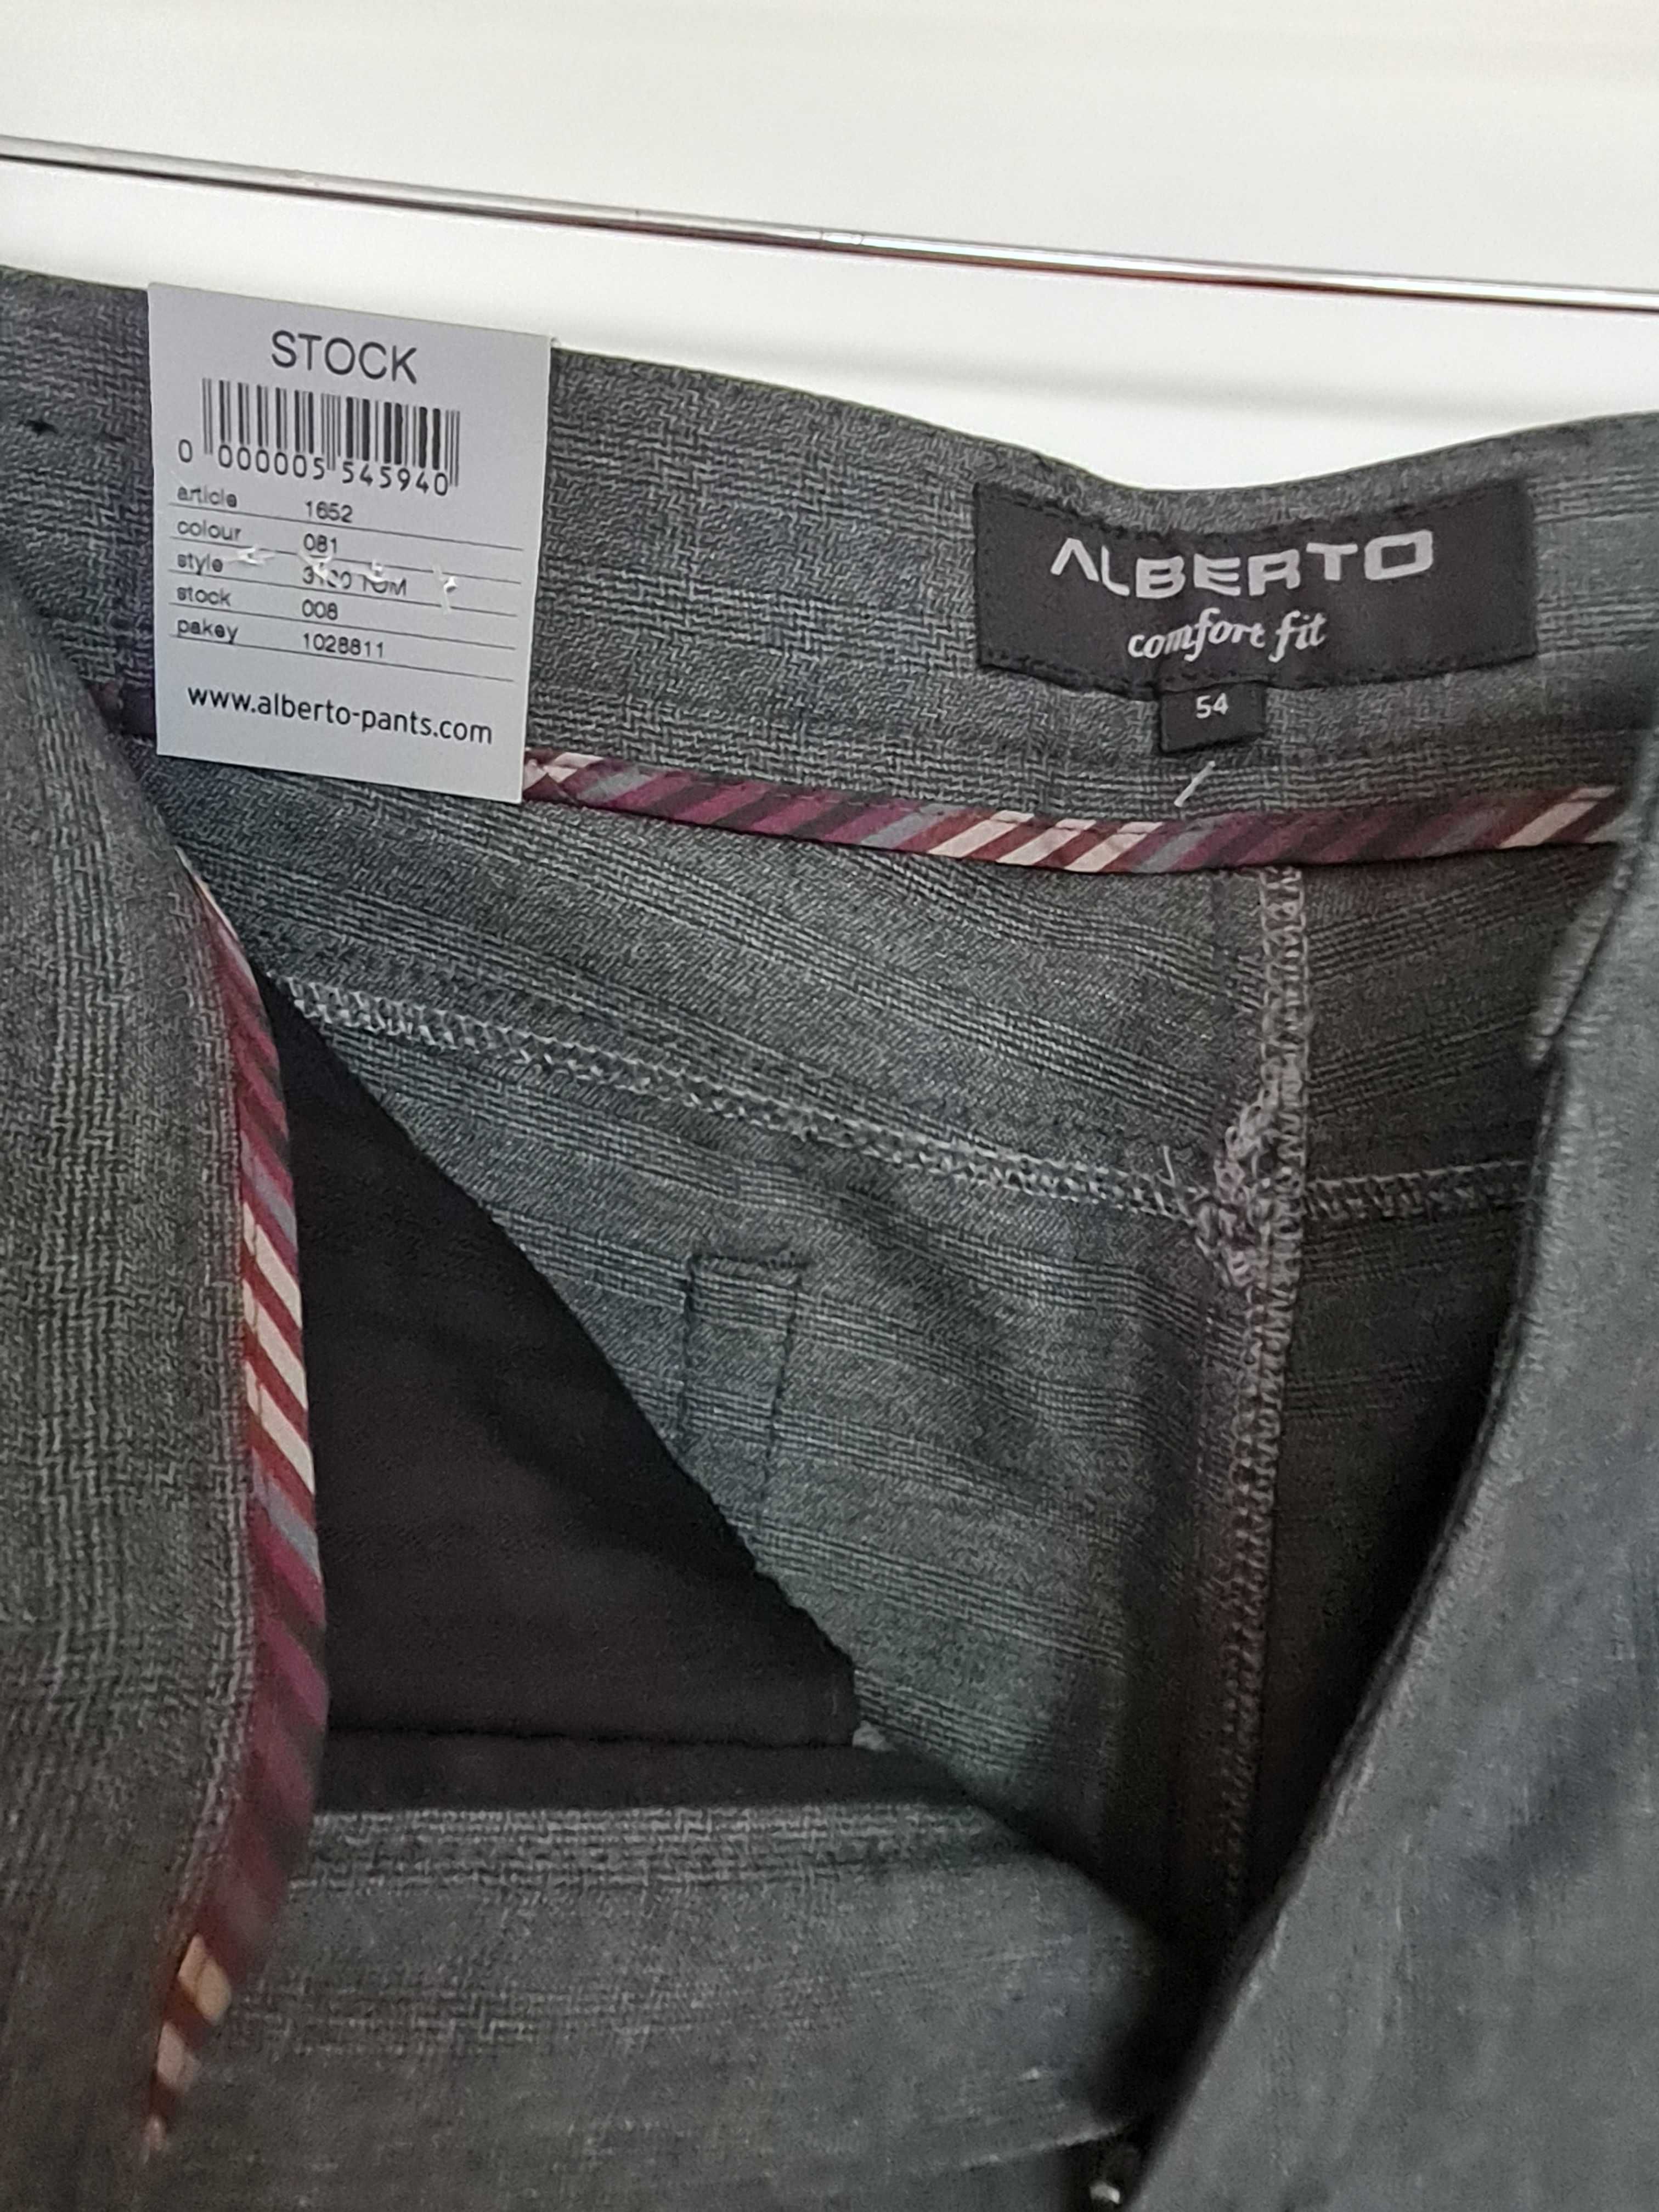 Nowe eleganckie męskie spodnie Alberto rozmiar 54 XL